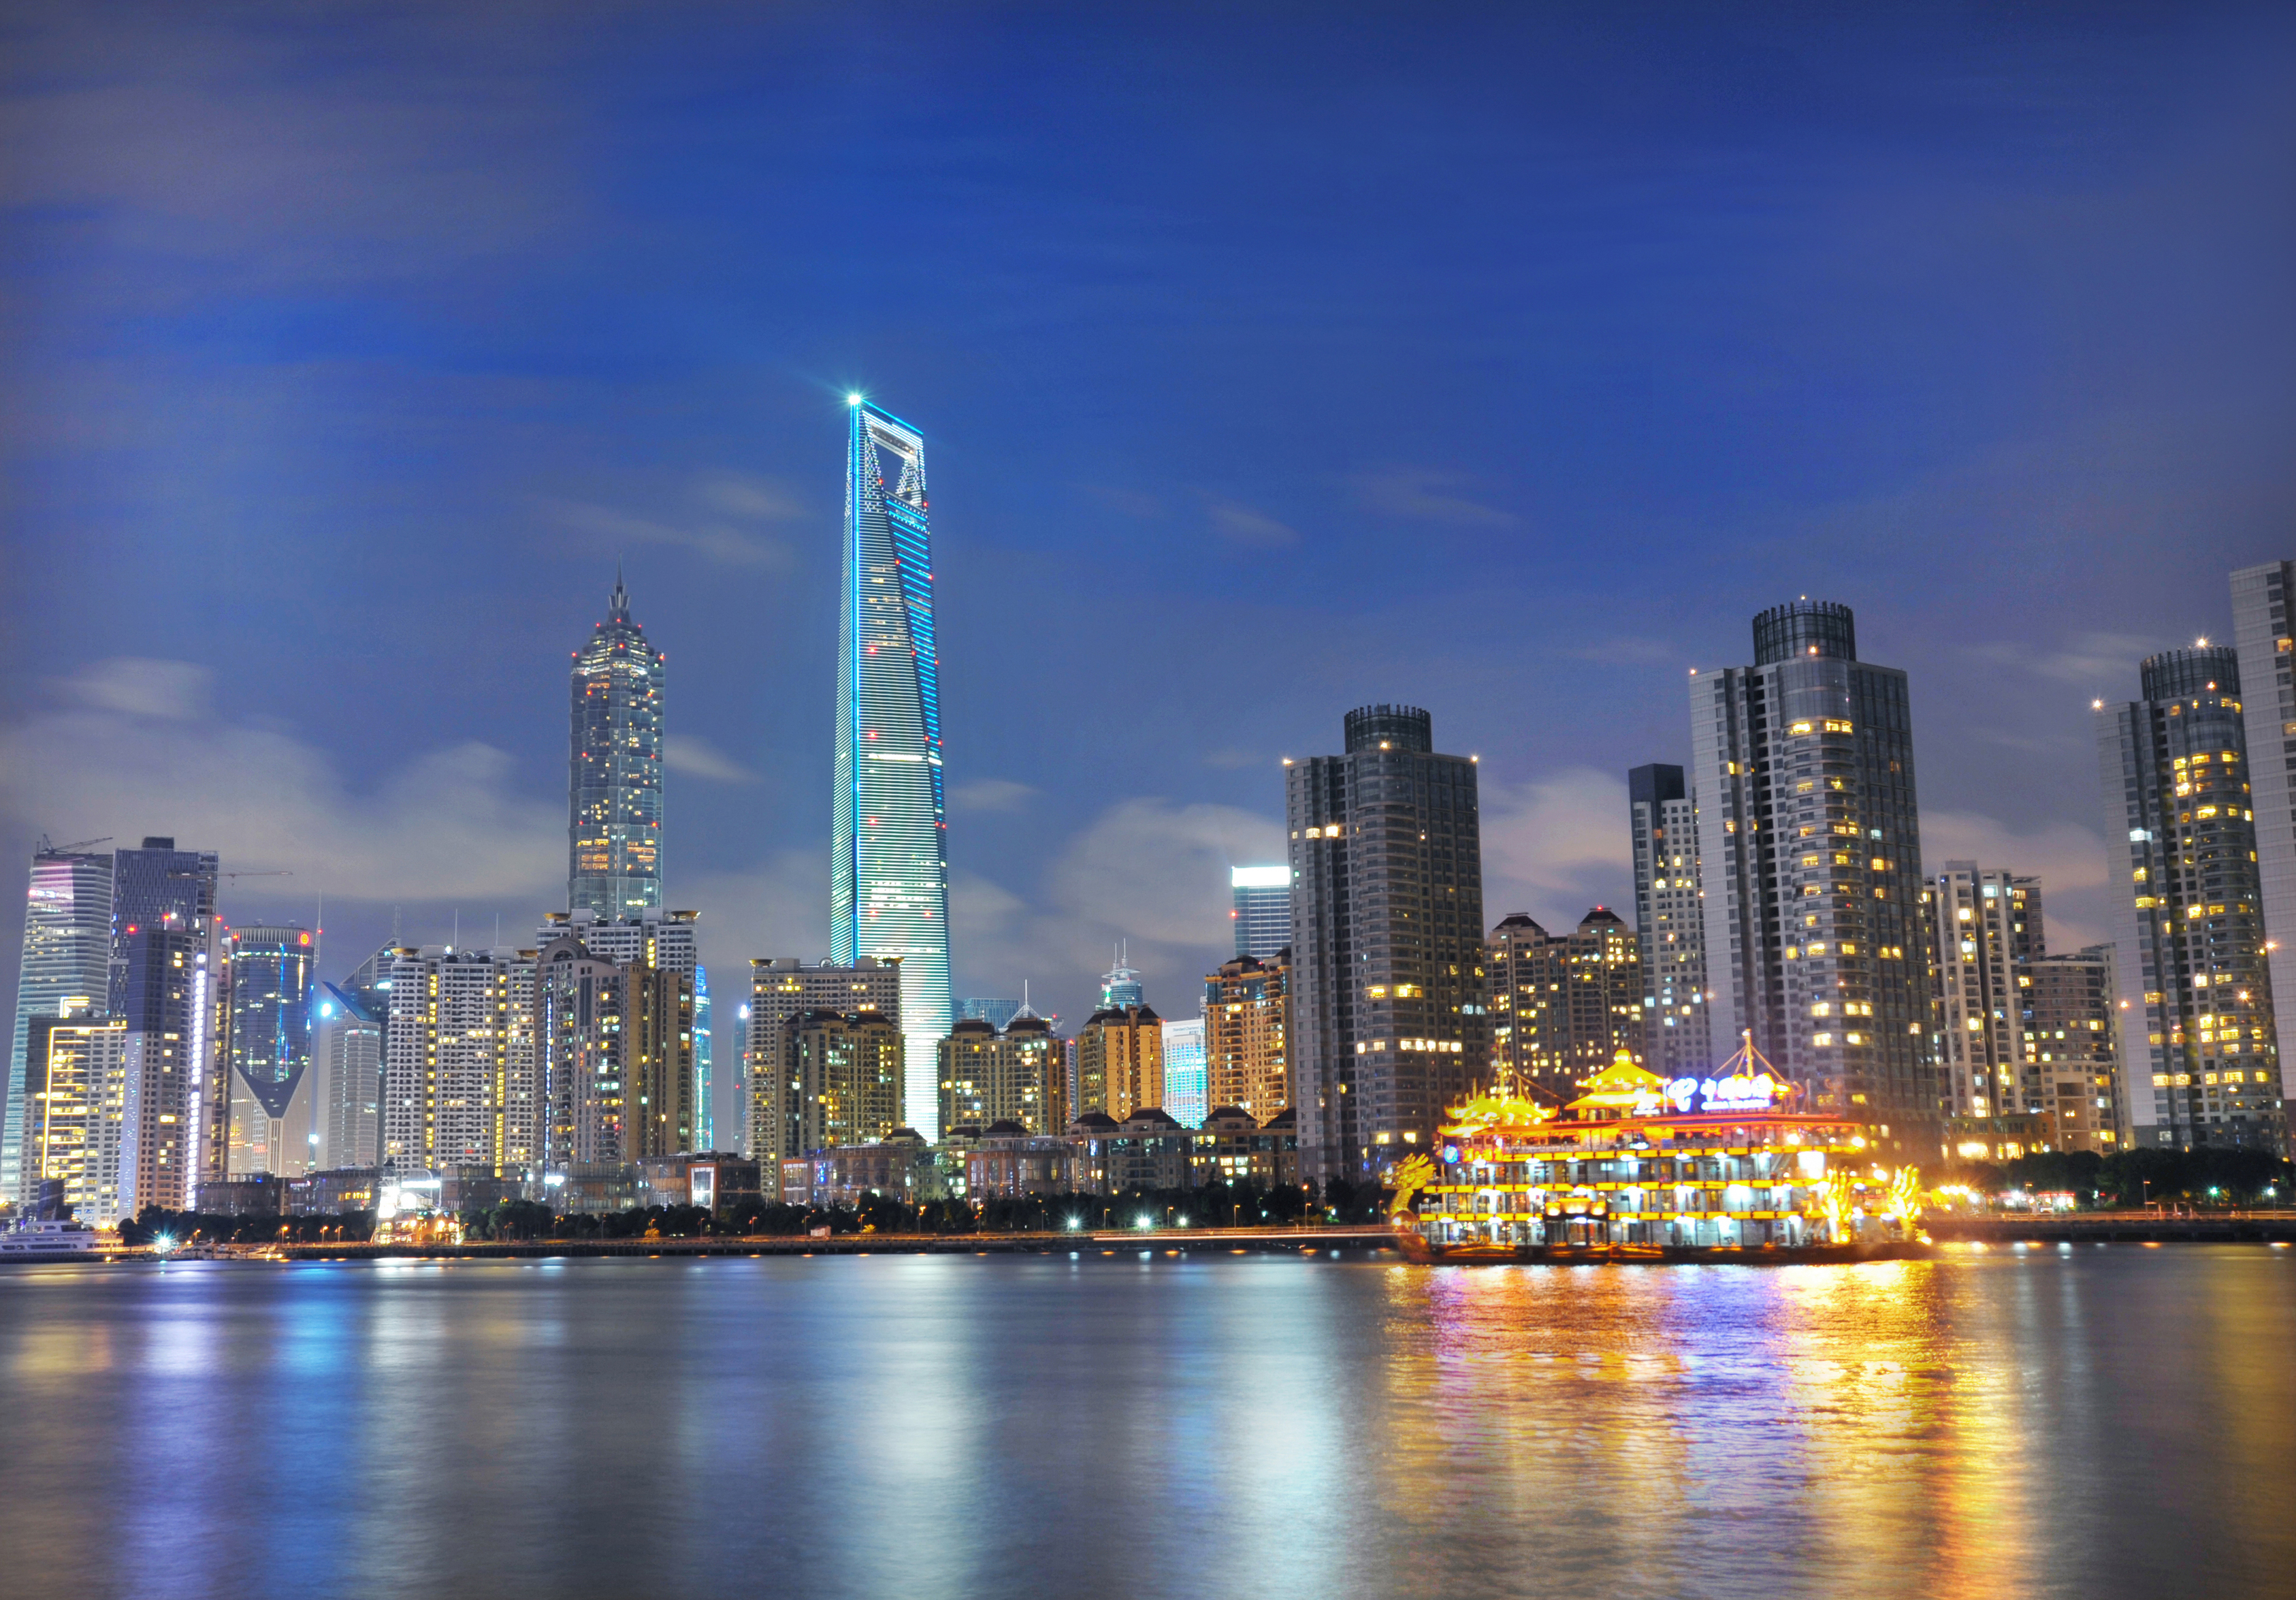 上海环球金融中心:当代摩天楼的典范